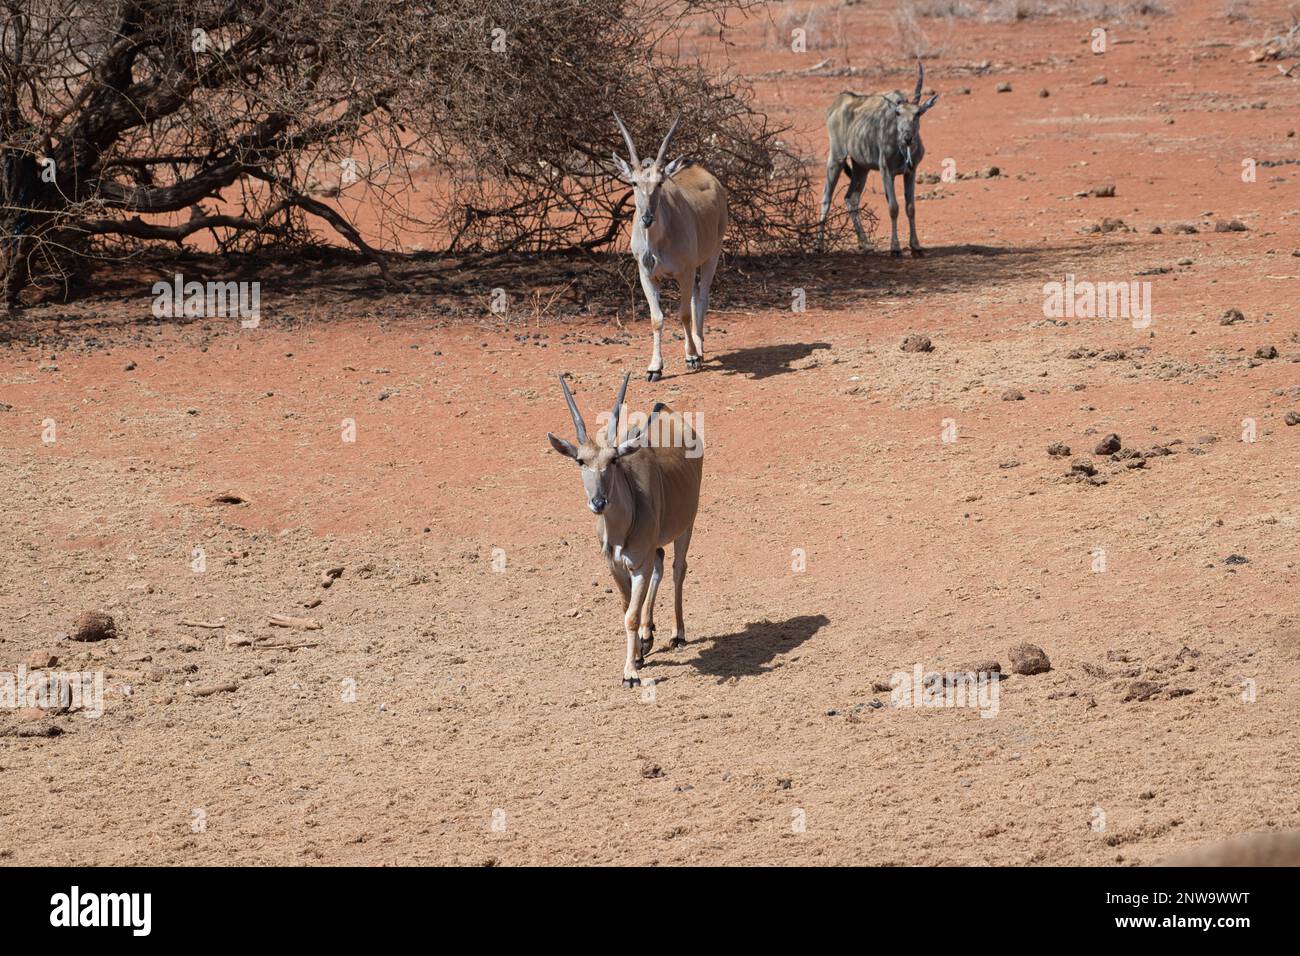 Three eland (Taurotragus oryx) nähert sich während einer Dürre einem Wasserloch. Der hintere sieht besonders ausgemagert aus. Stockfoto